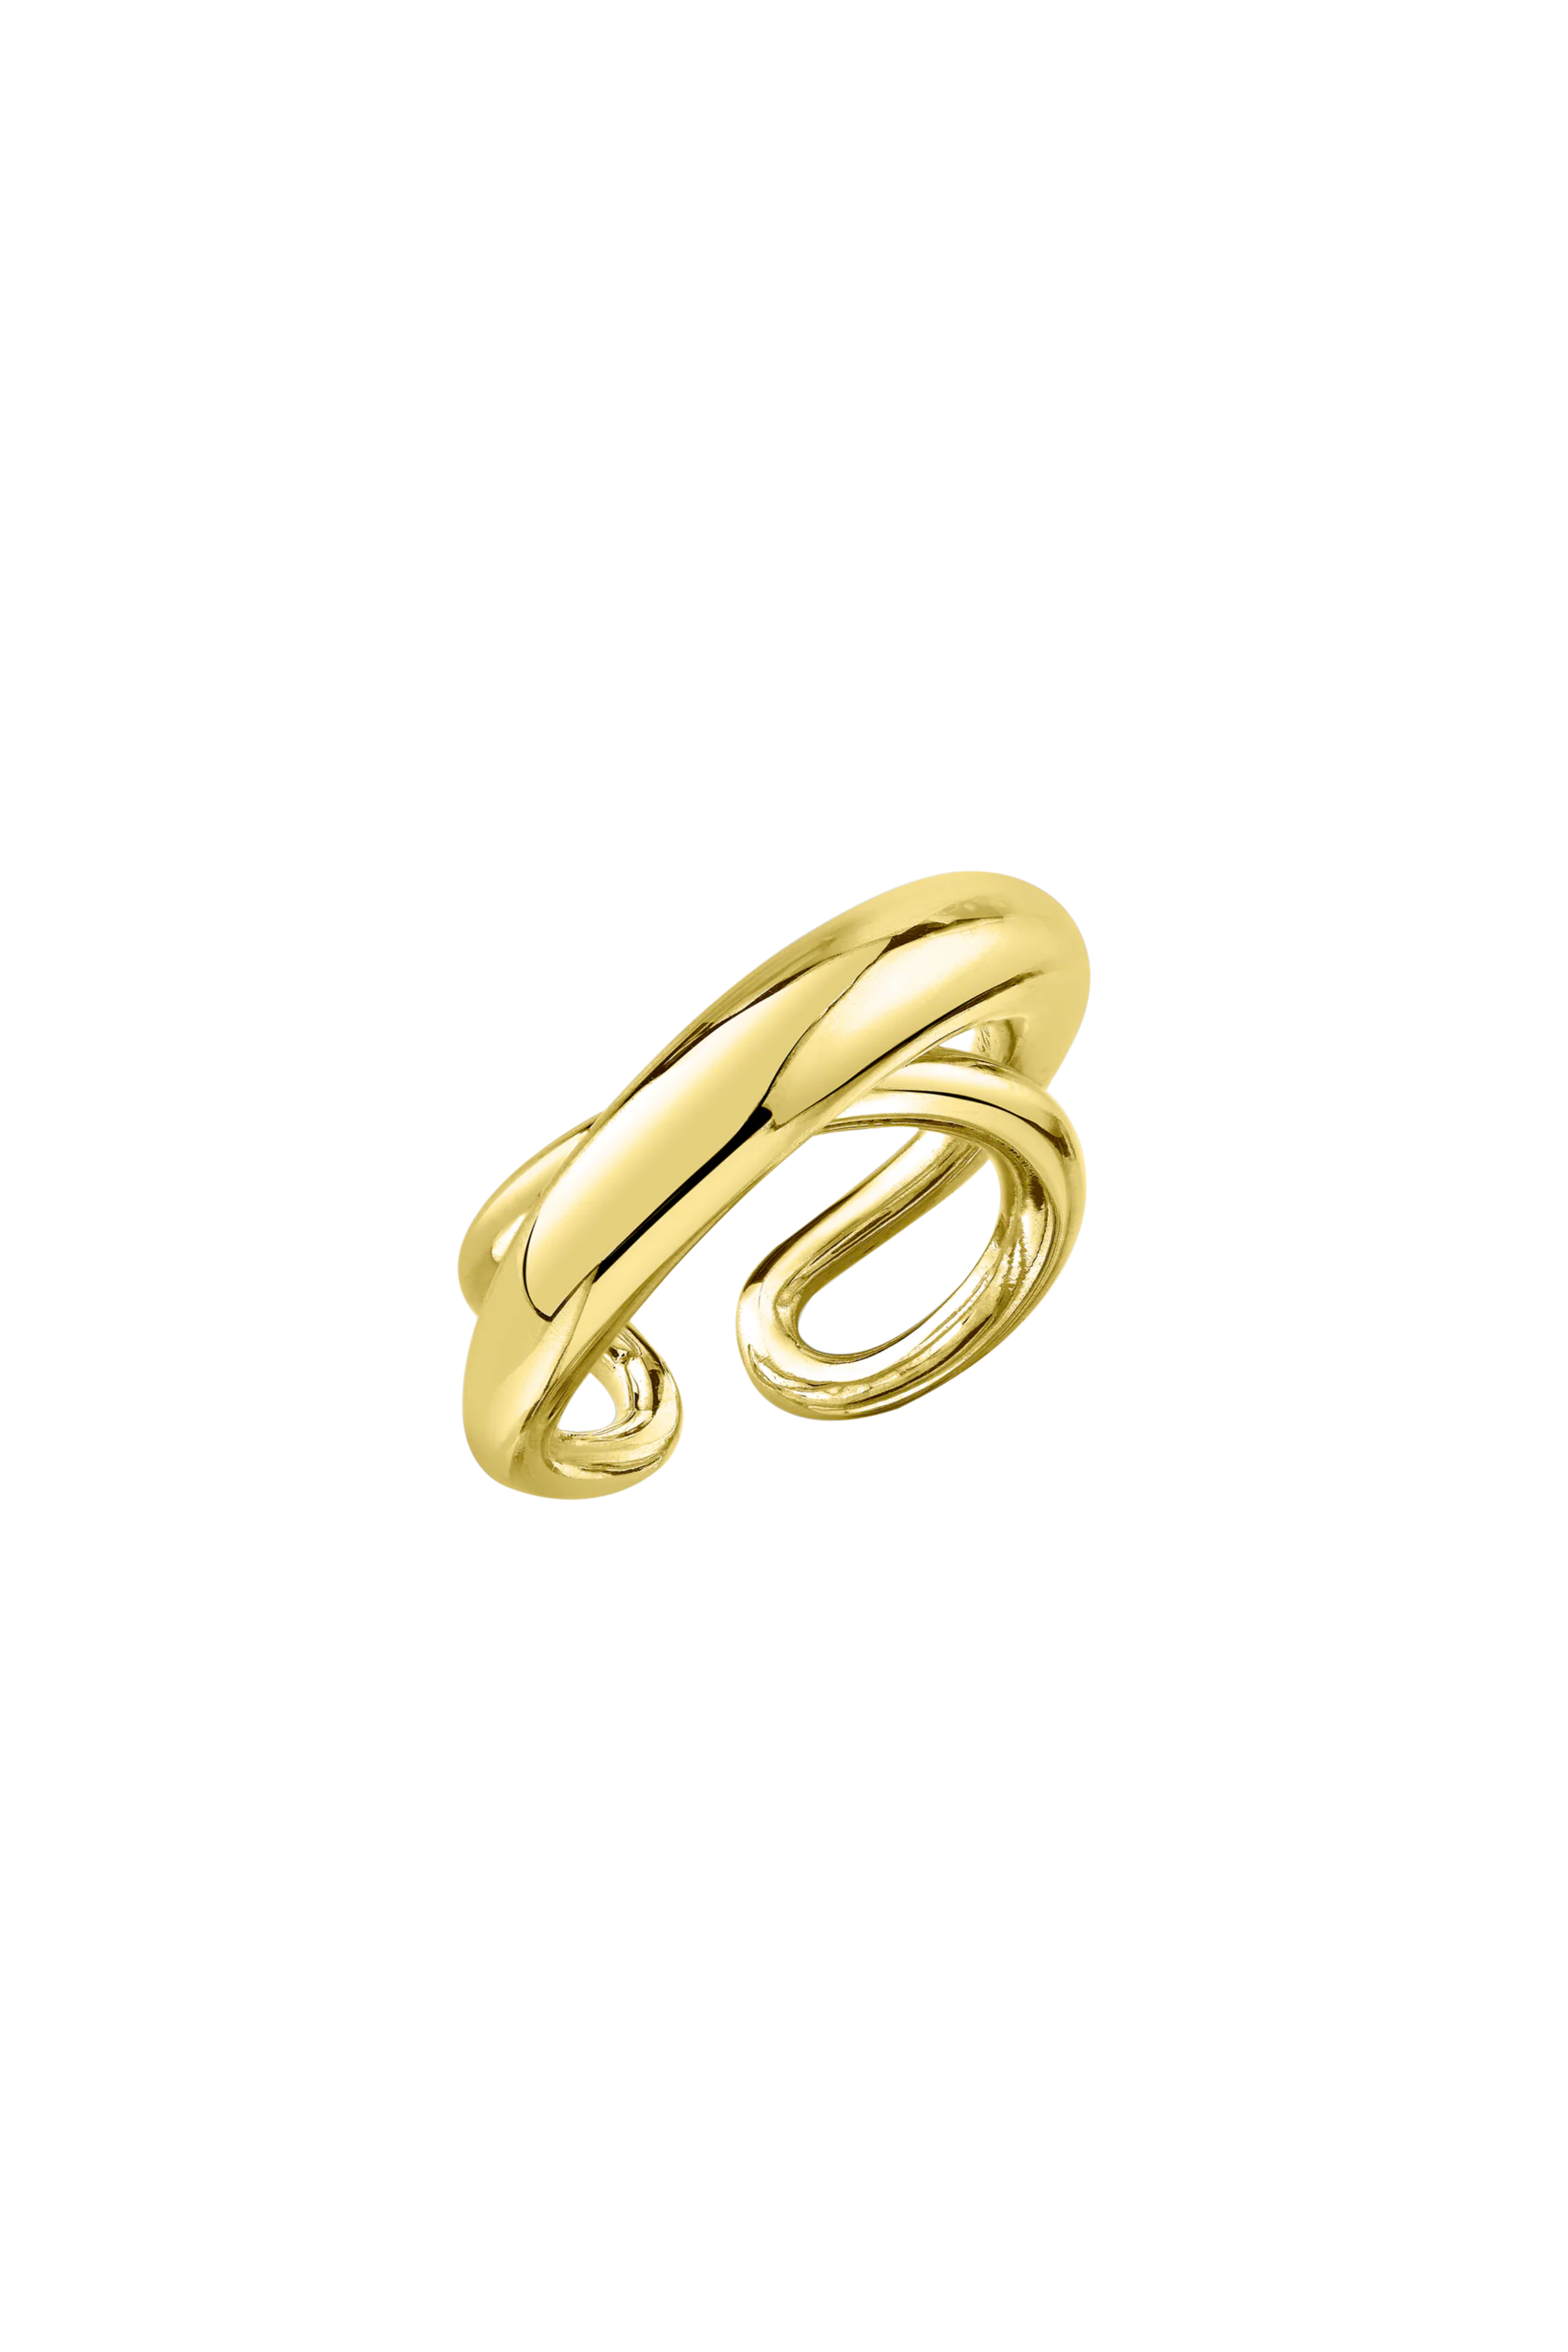 Gabriela Artigas Twisted Gold Ring